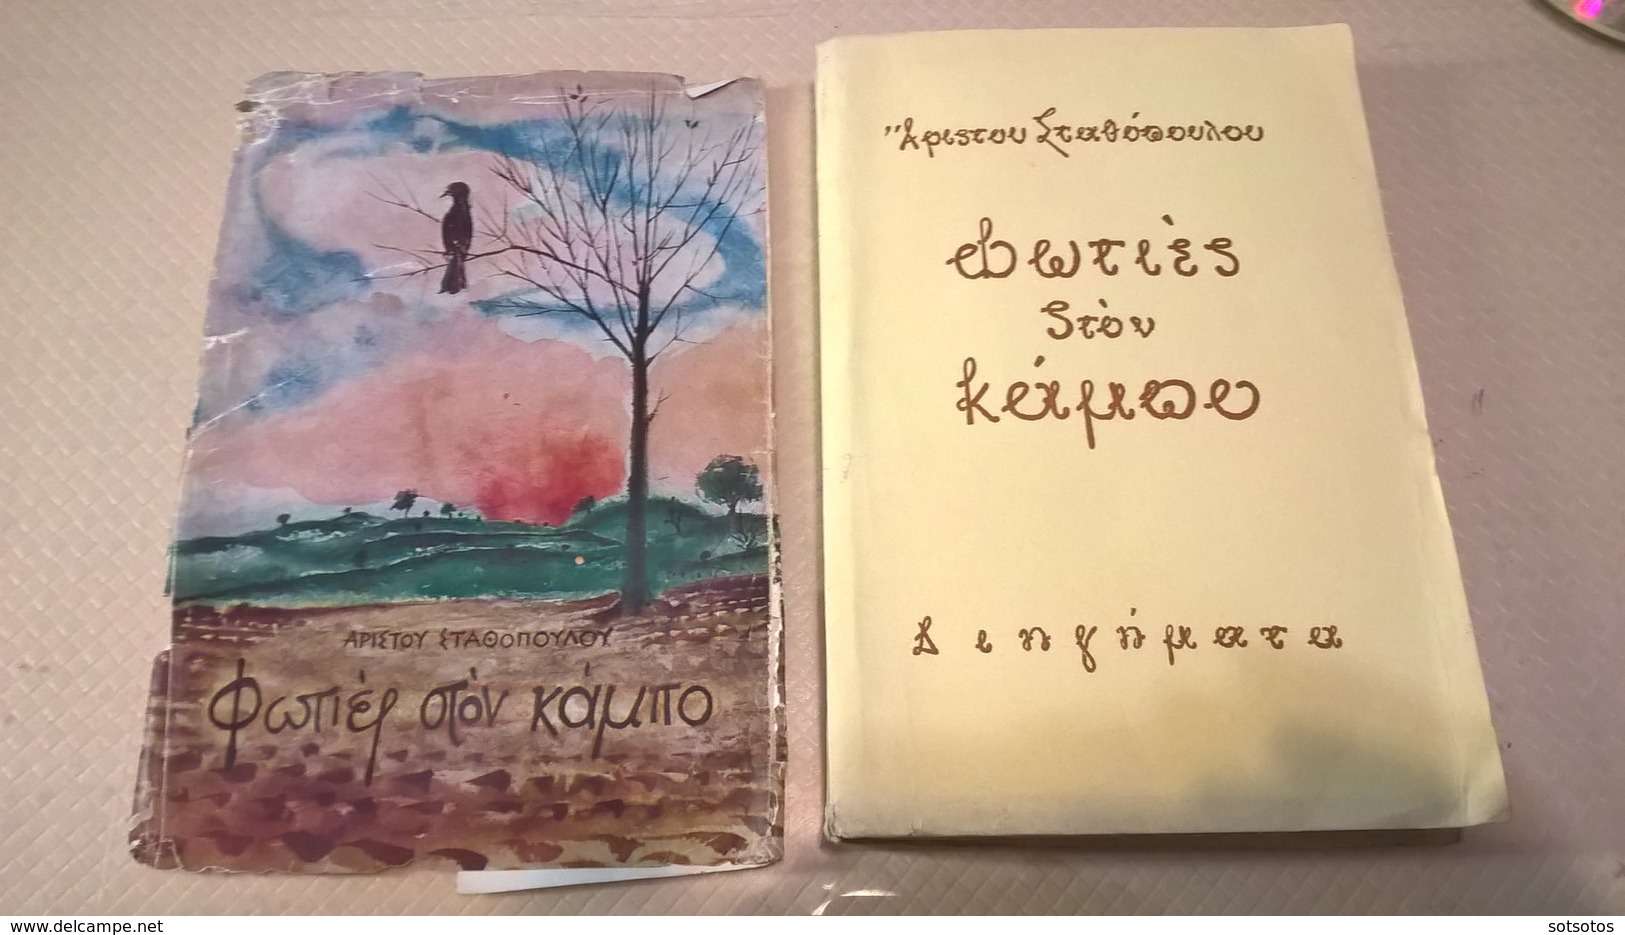 GREEK BOOK - ΦΩΤΙΕΣ στον ΚΑΜΠΟ: Άριστου ΣΤΑΘΟΠΟΥΛΟΥ (ιδιόχειρη αφιέρωση του συγγραφέα στο γνωστό ιστορικό συγγραφέα Κώστ - Romanzi